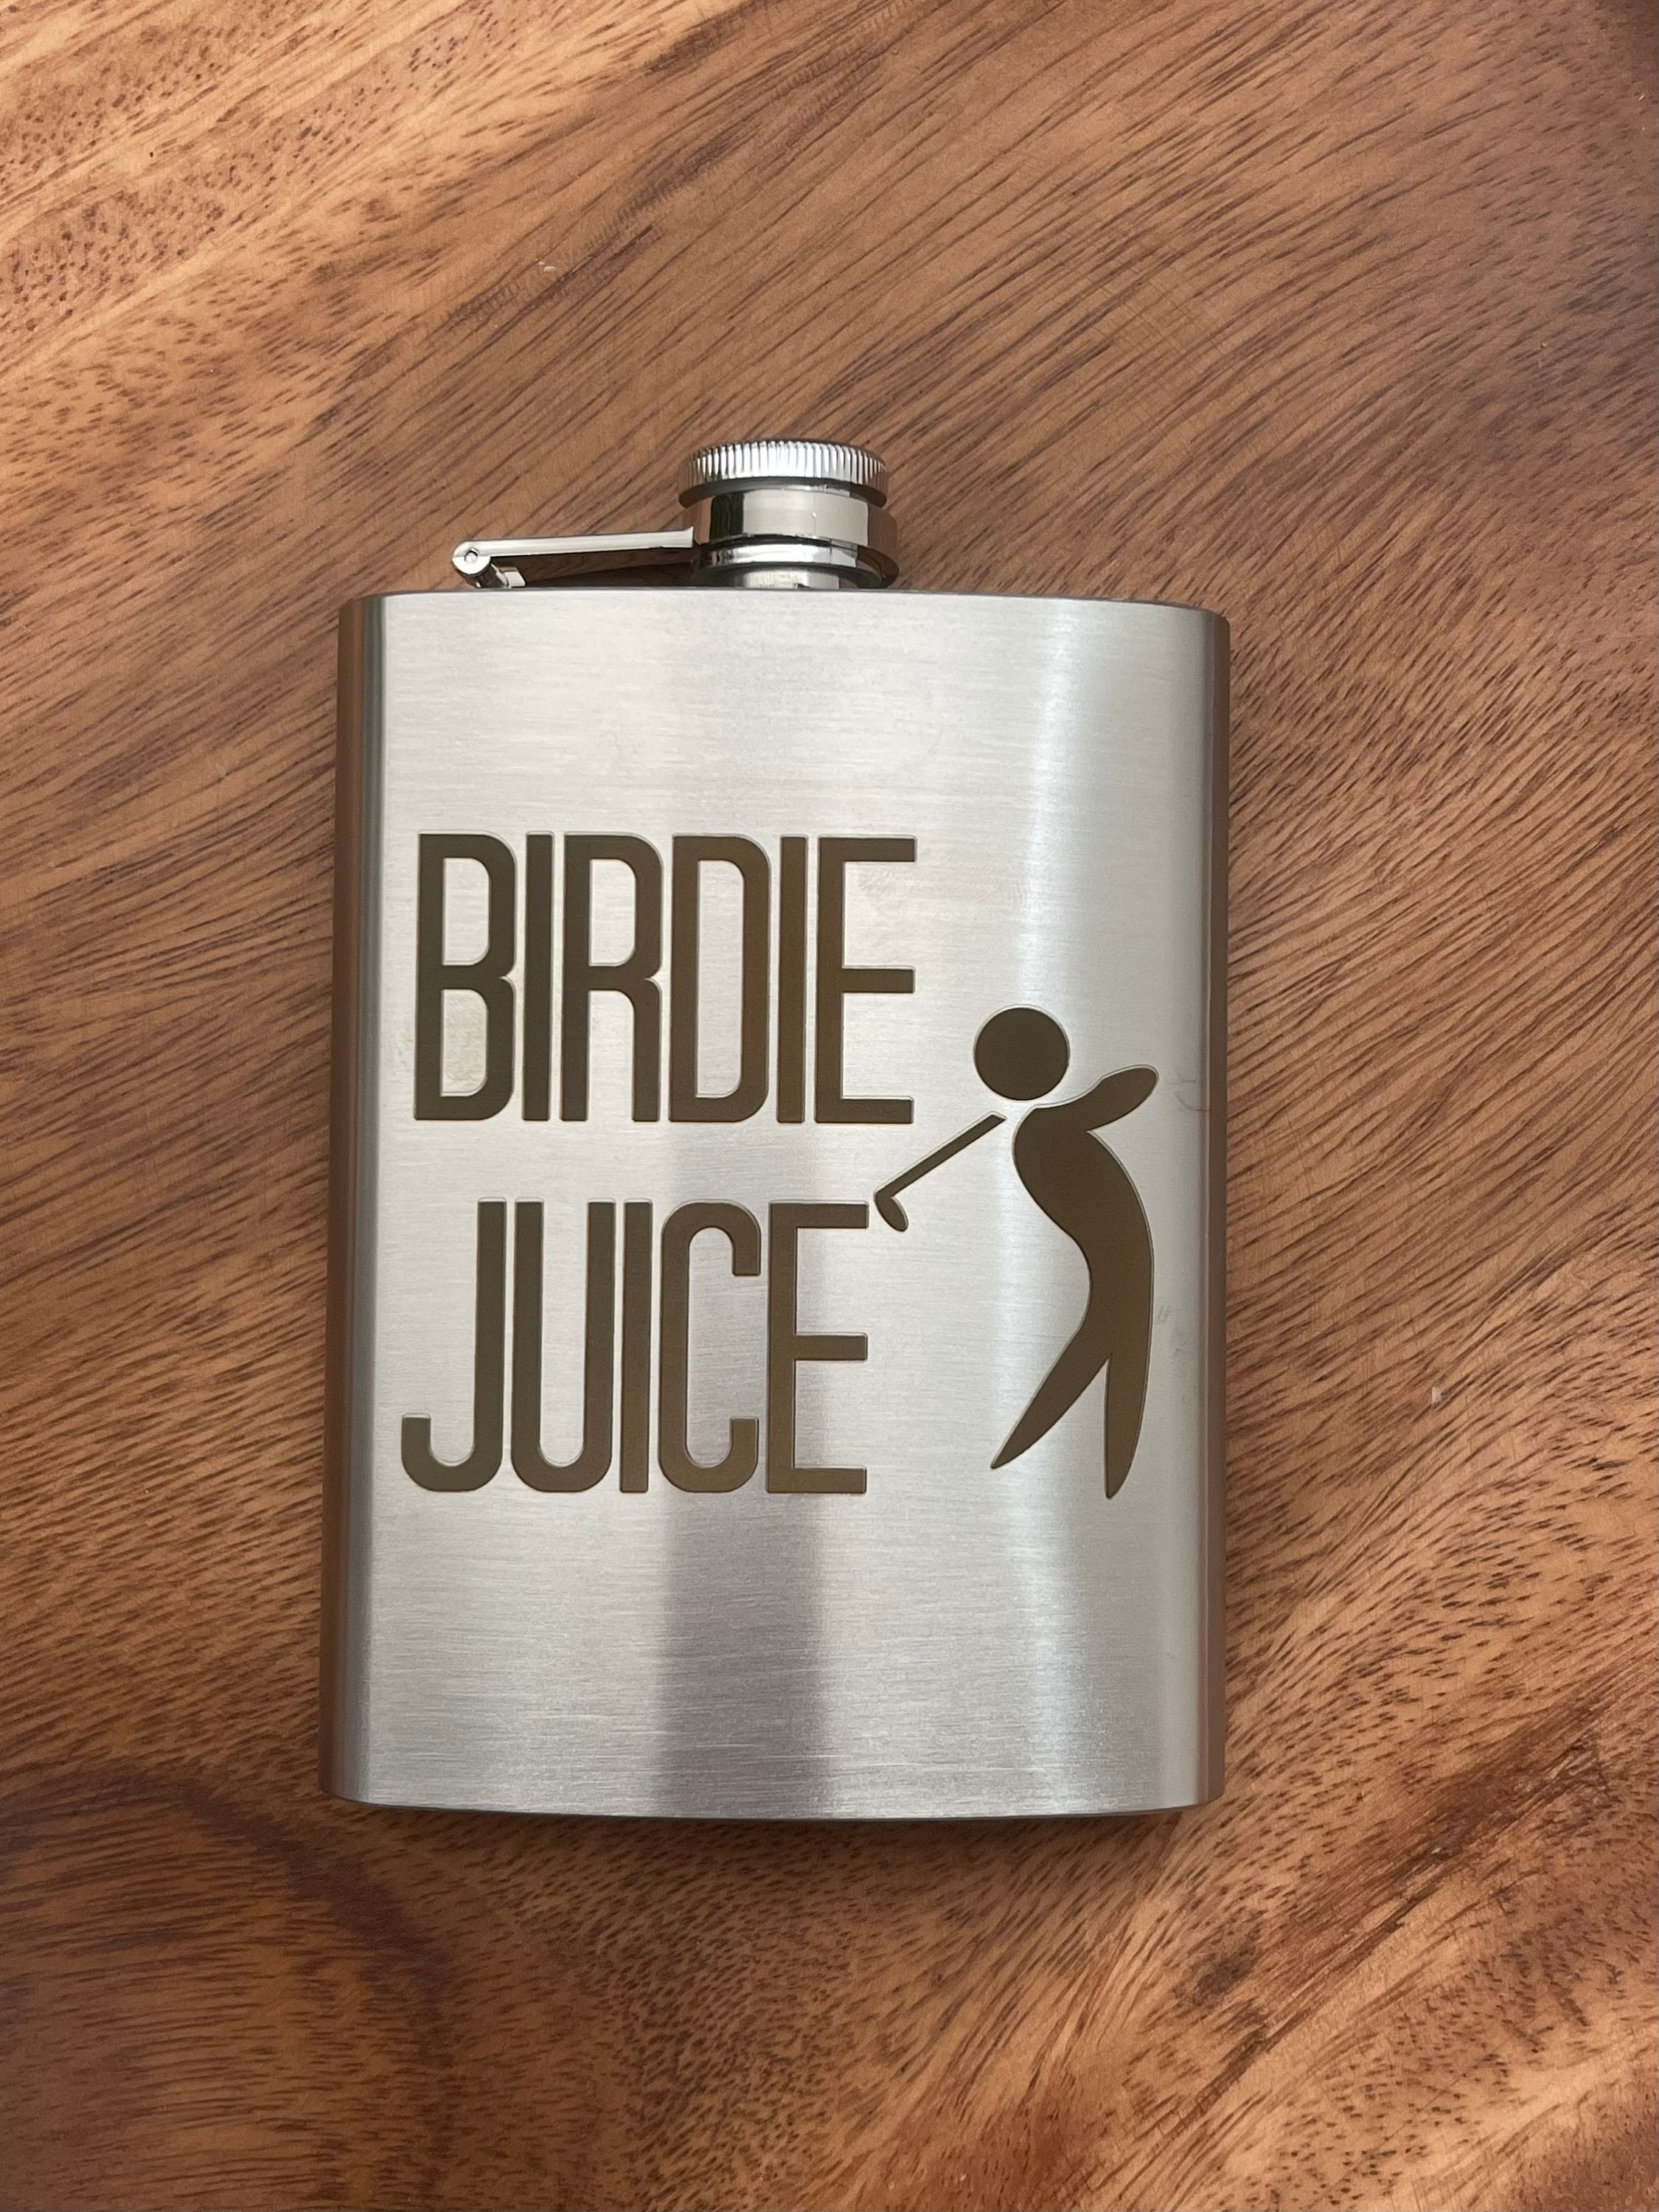 Birdie Bottle 8 Ounce-Pink Birdie Juice or Black The Ladies Pro Shop